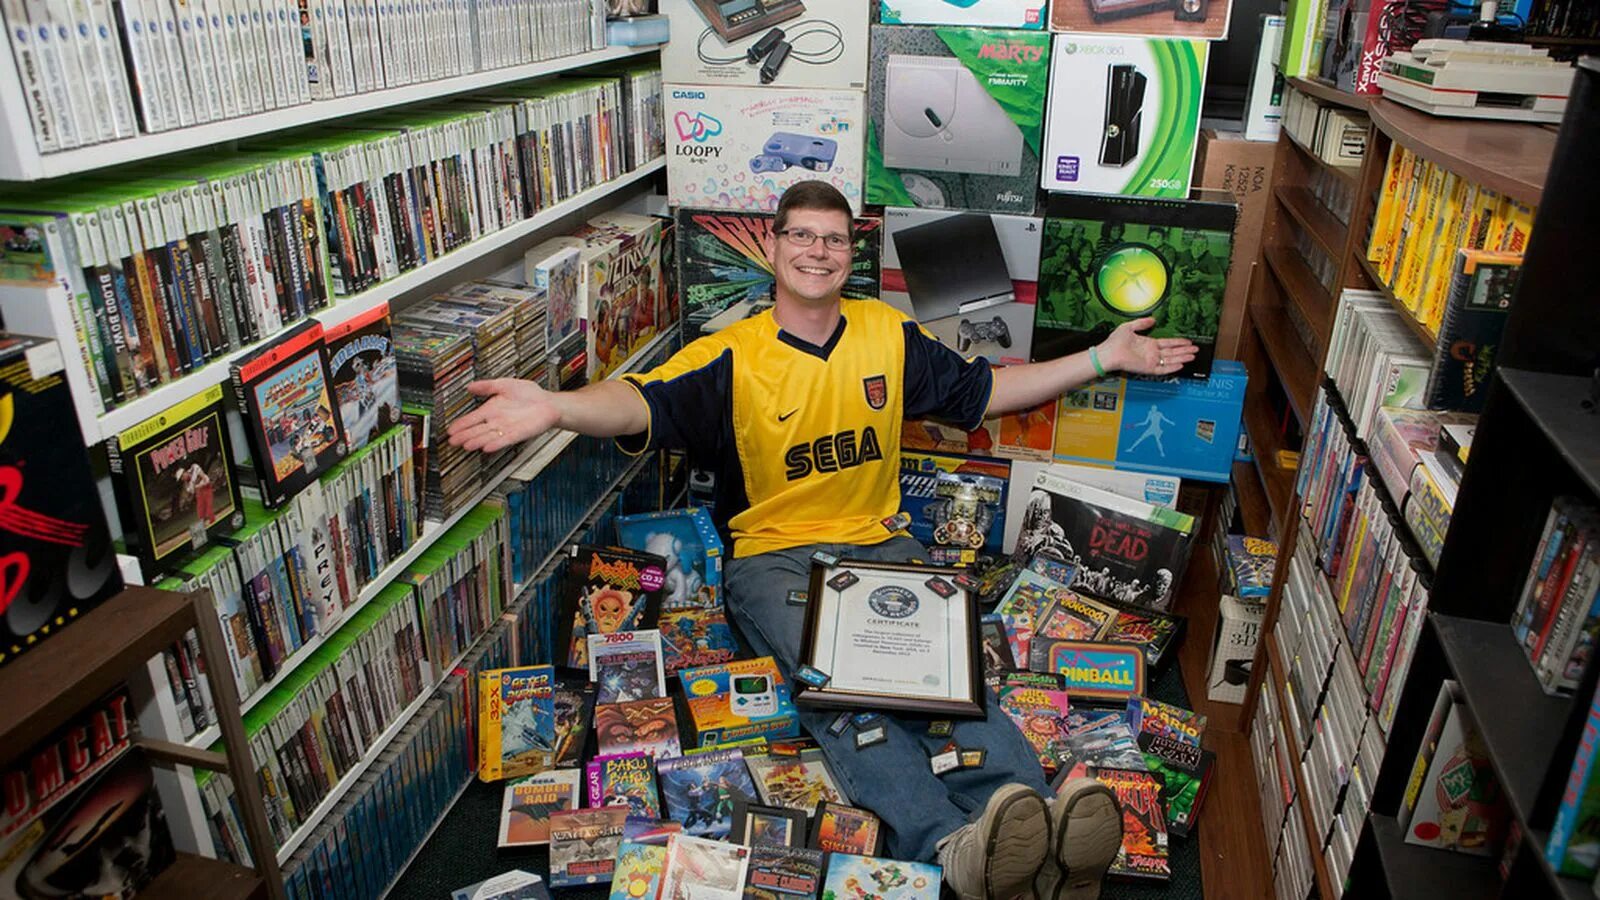 Литература компьютерных игр. Самая большая коллекция игр. Коллекционер игровых приставок. Коллекционирование компьютерных игр. Самая большая коллекция видеоигр в мире.